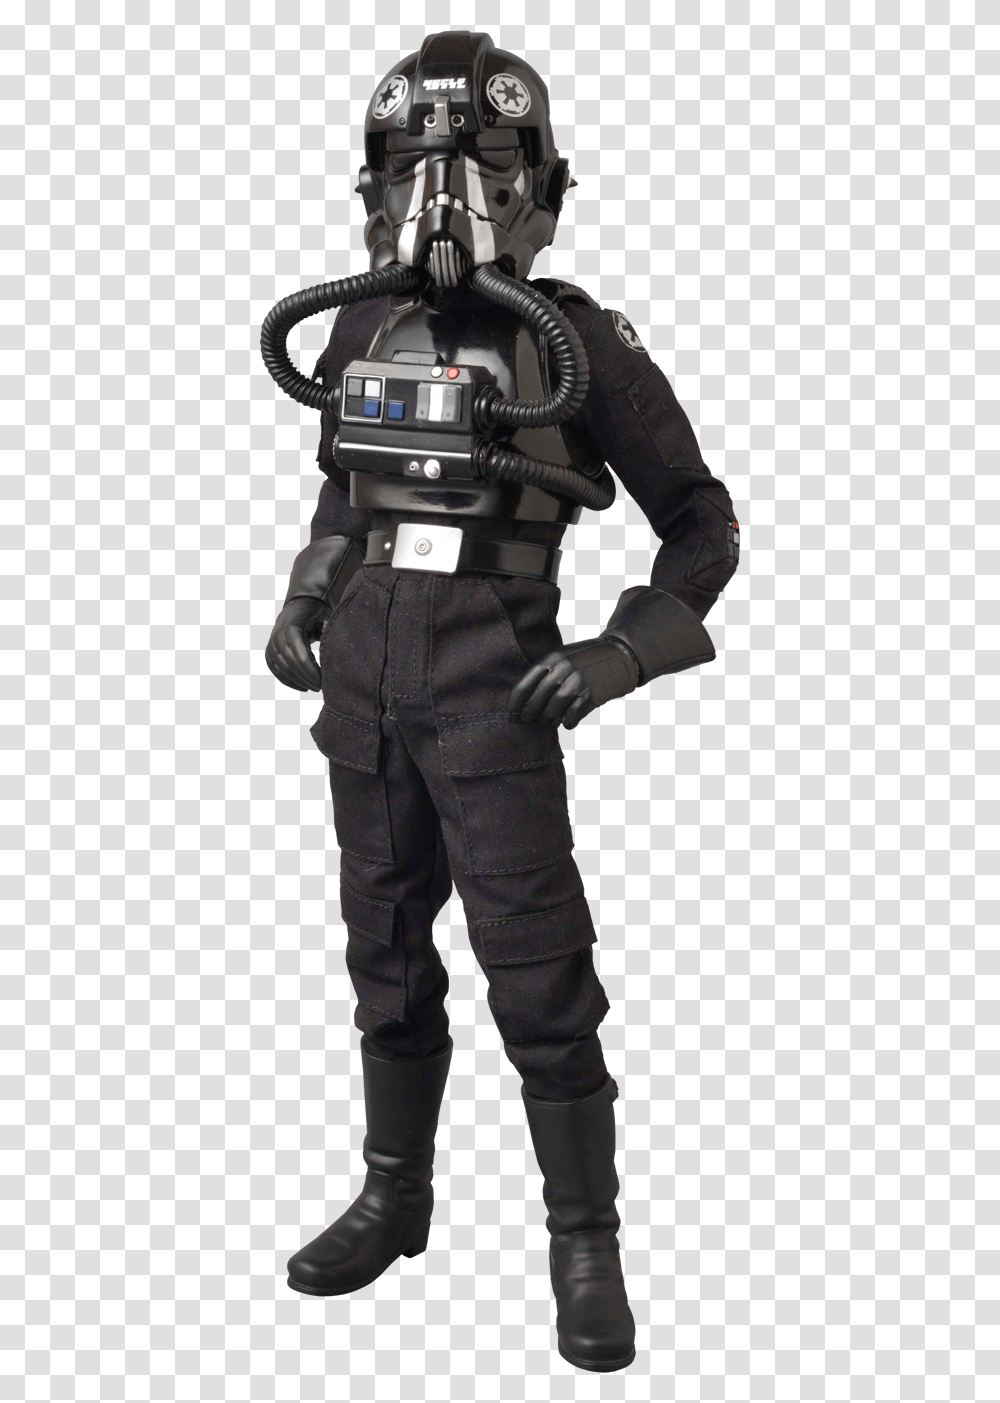 Star Wars Storm Trooper Pilot, Apparel, Pants, Helmet Transparent Png